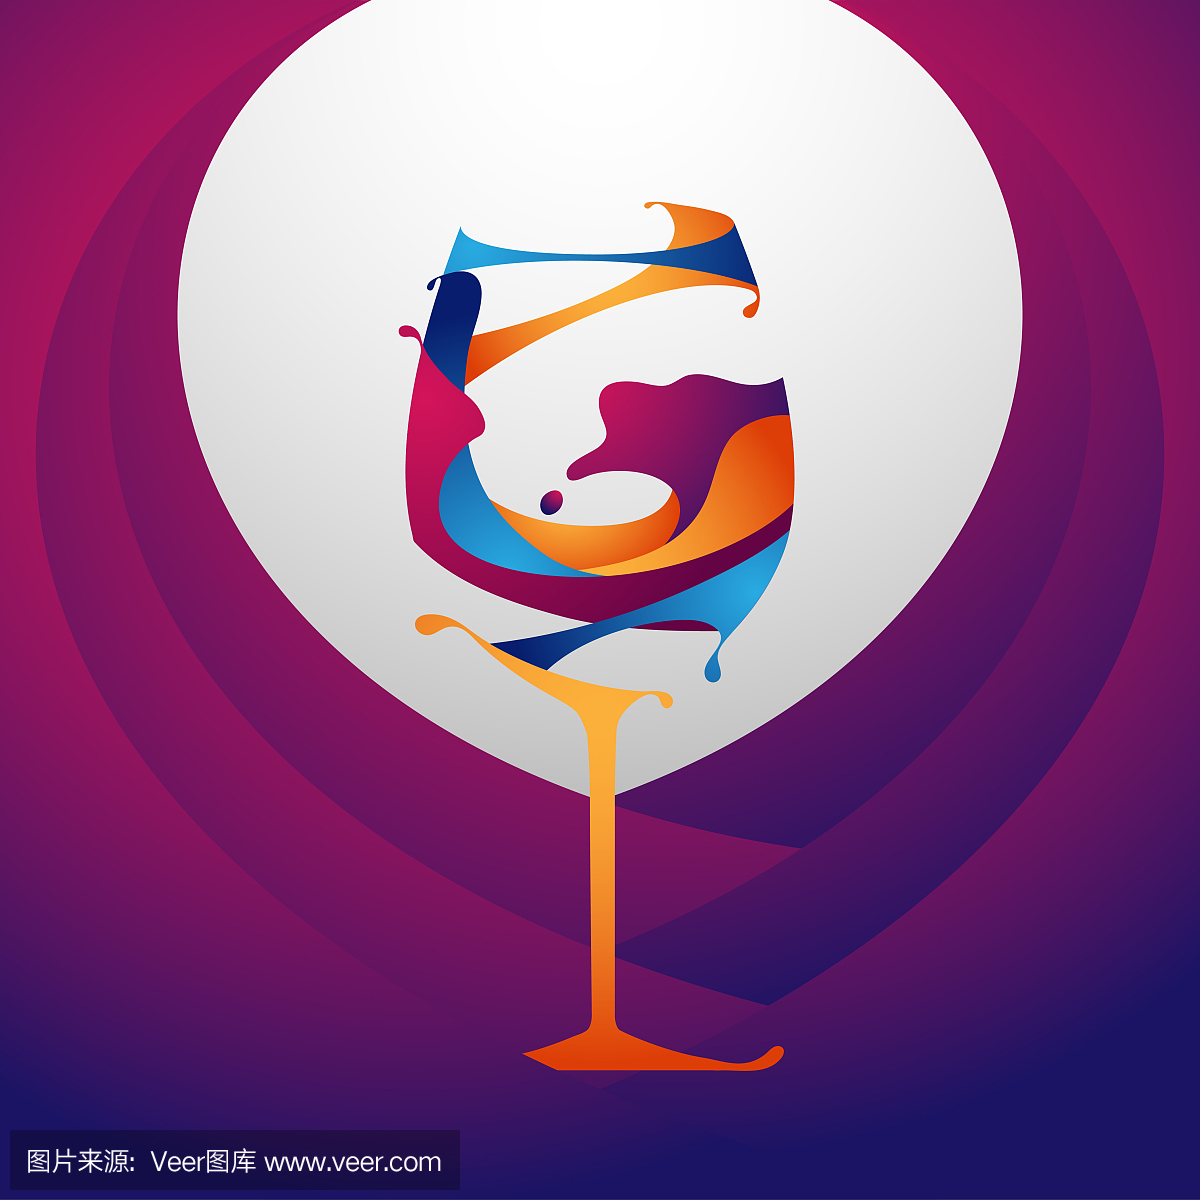 葡萄酒,便宜葡萄酒,陈酿,葡萄美酒